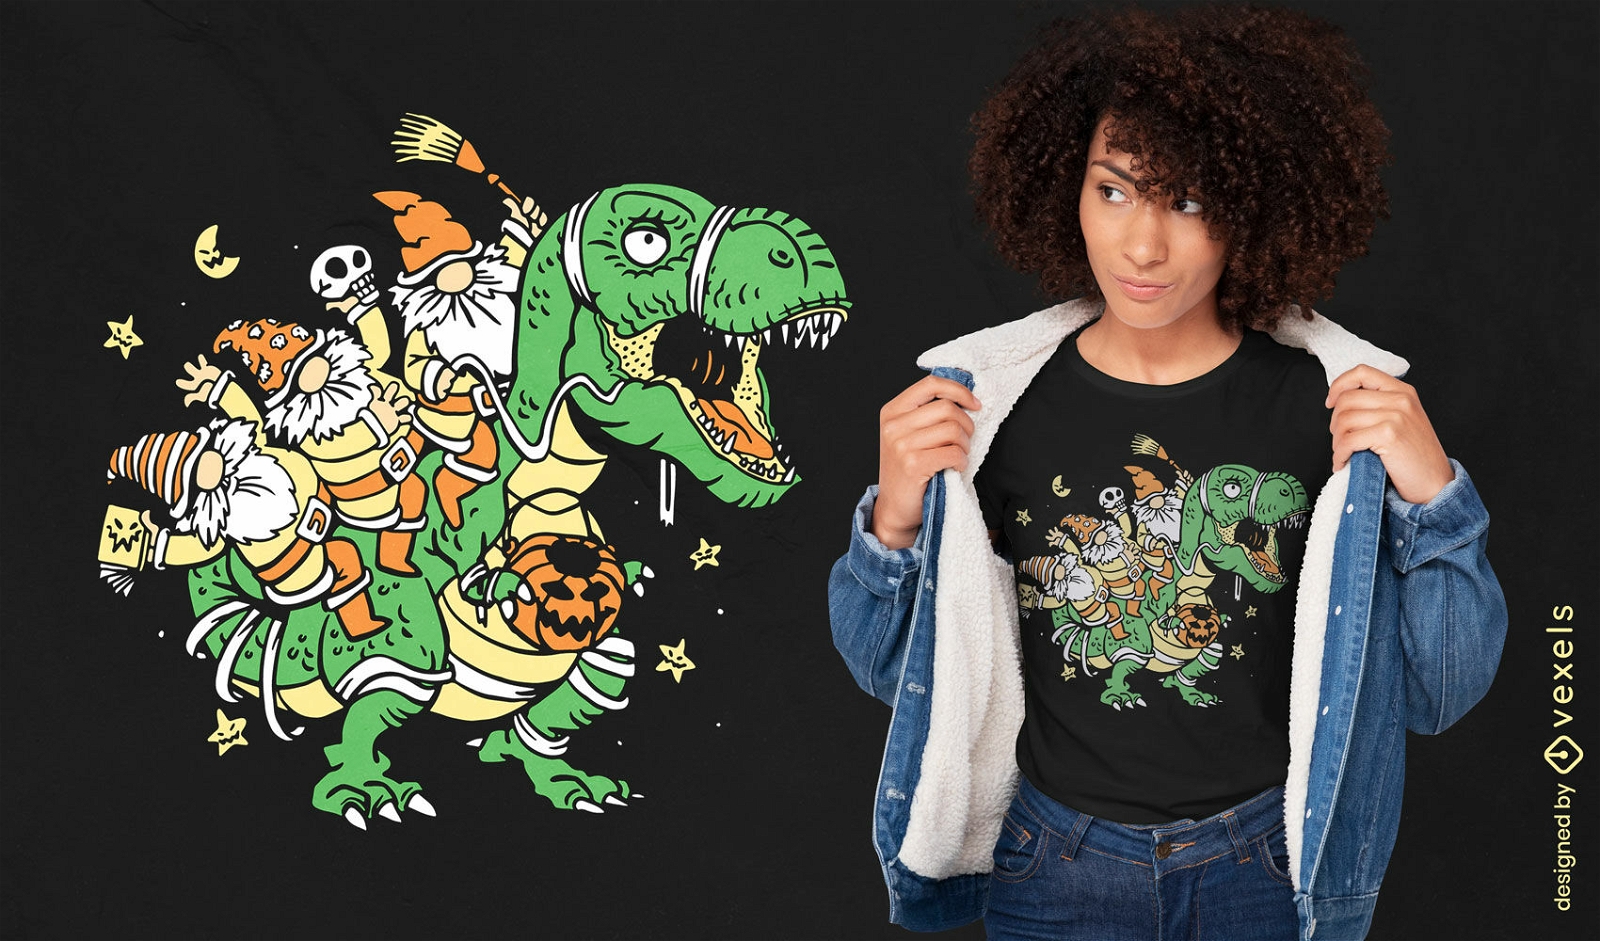 Zwerge auf T-Rex-Dinosaurier-T-Shirt-Design